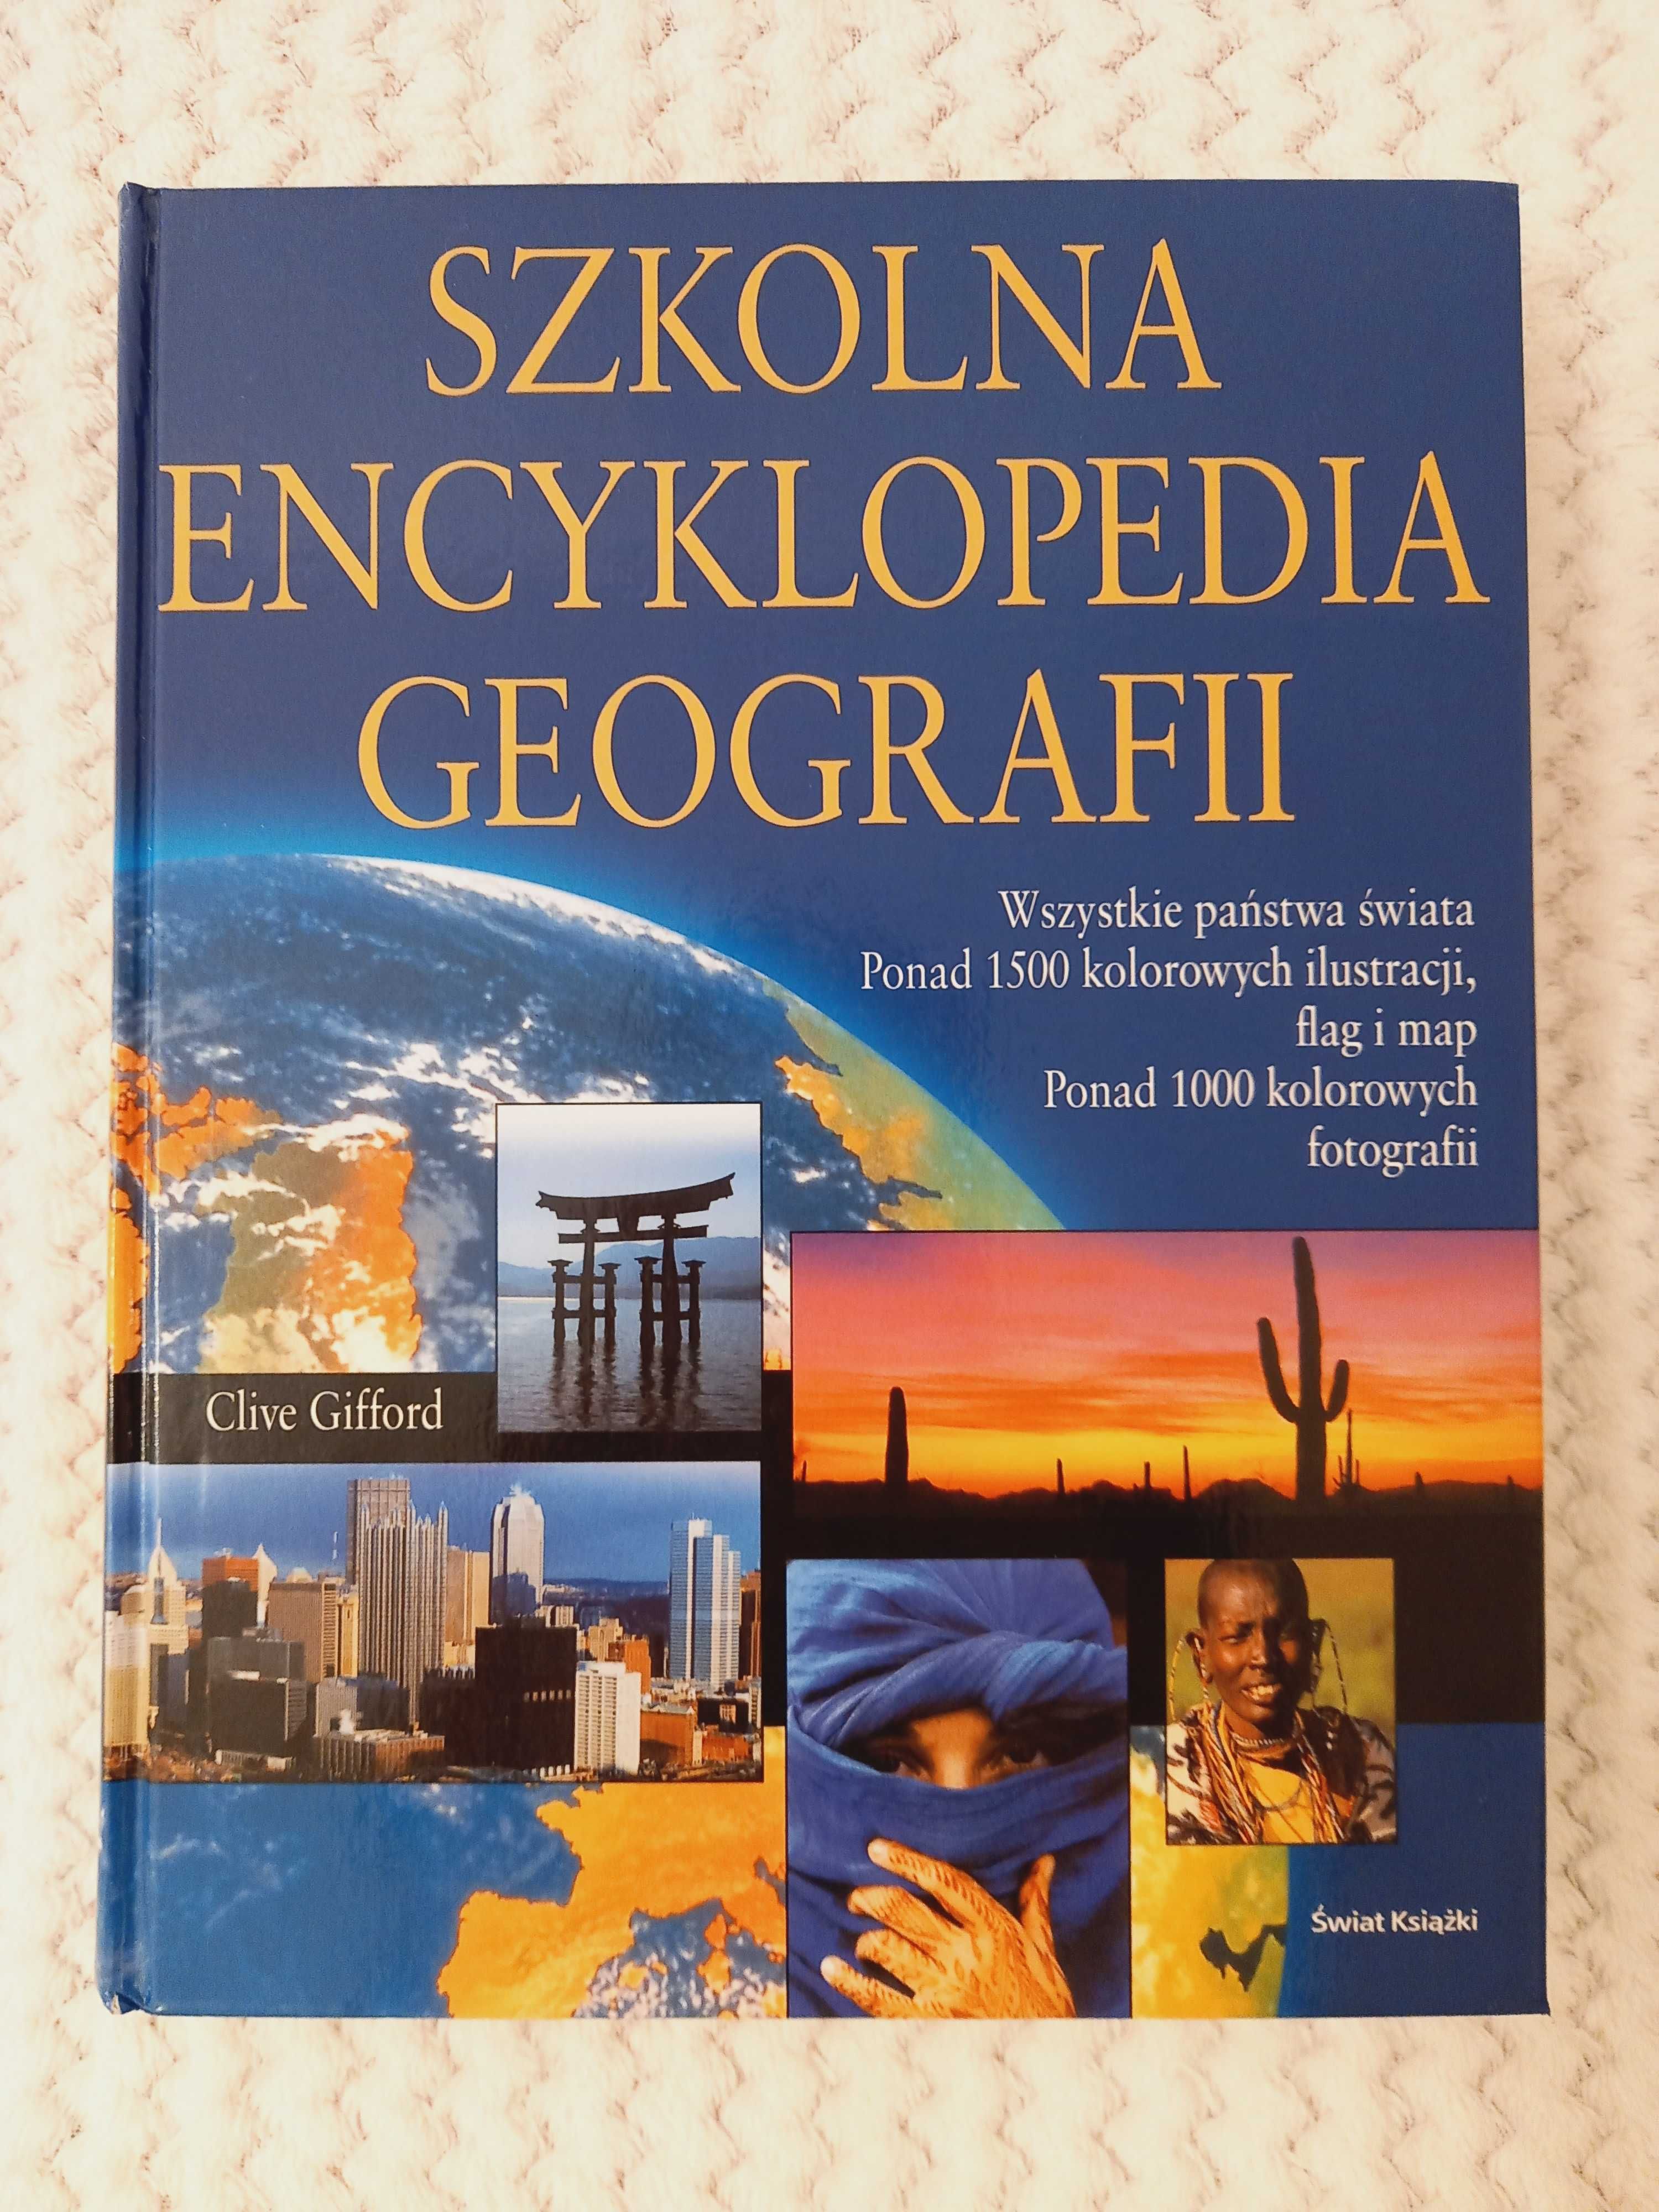 Wielka Encyklopedia Geografii (seria Oxford 16 sztuk)+gratis do wyboru